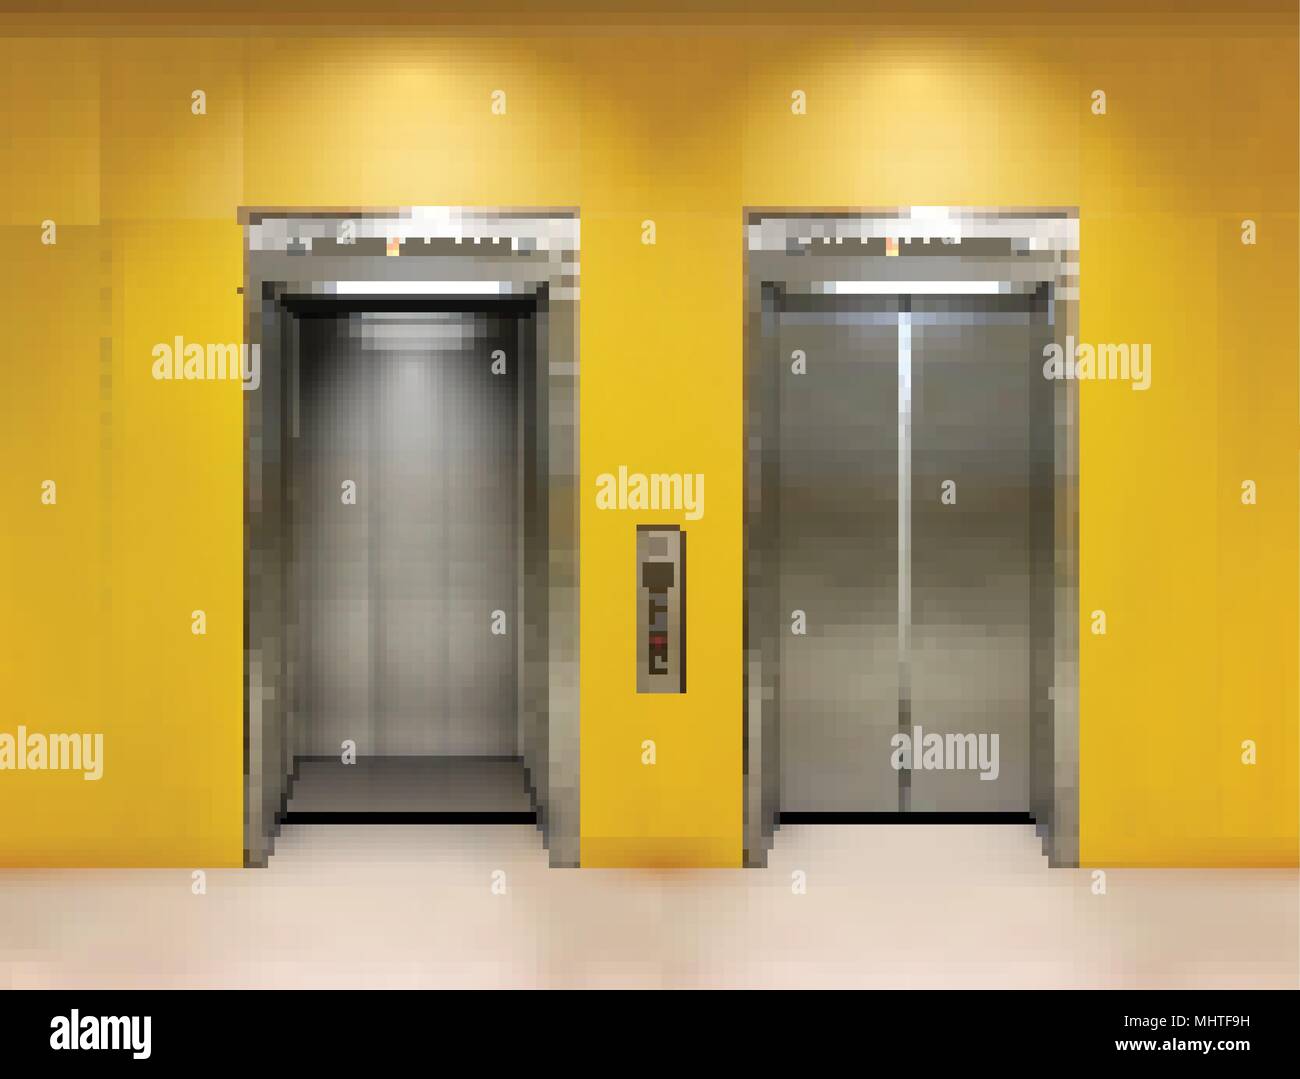 Metall verchromt Bürogebäude Aufzugstüren. Offene und geschlossene Variante. Realistische vector Abbildung gelb Wandpaneele Bürogebäude Aufzug. Stock Vektor